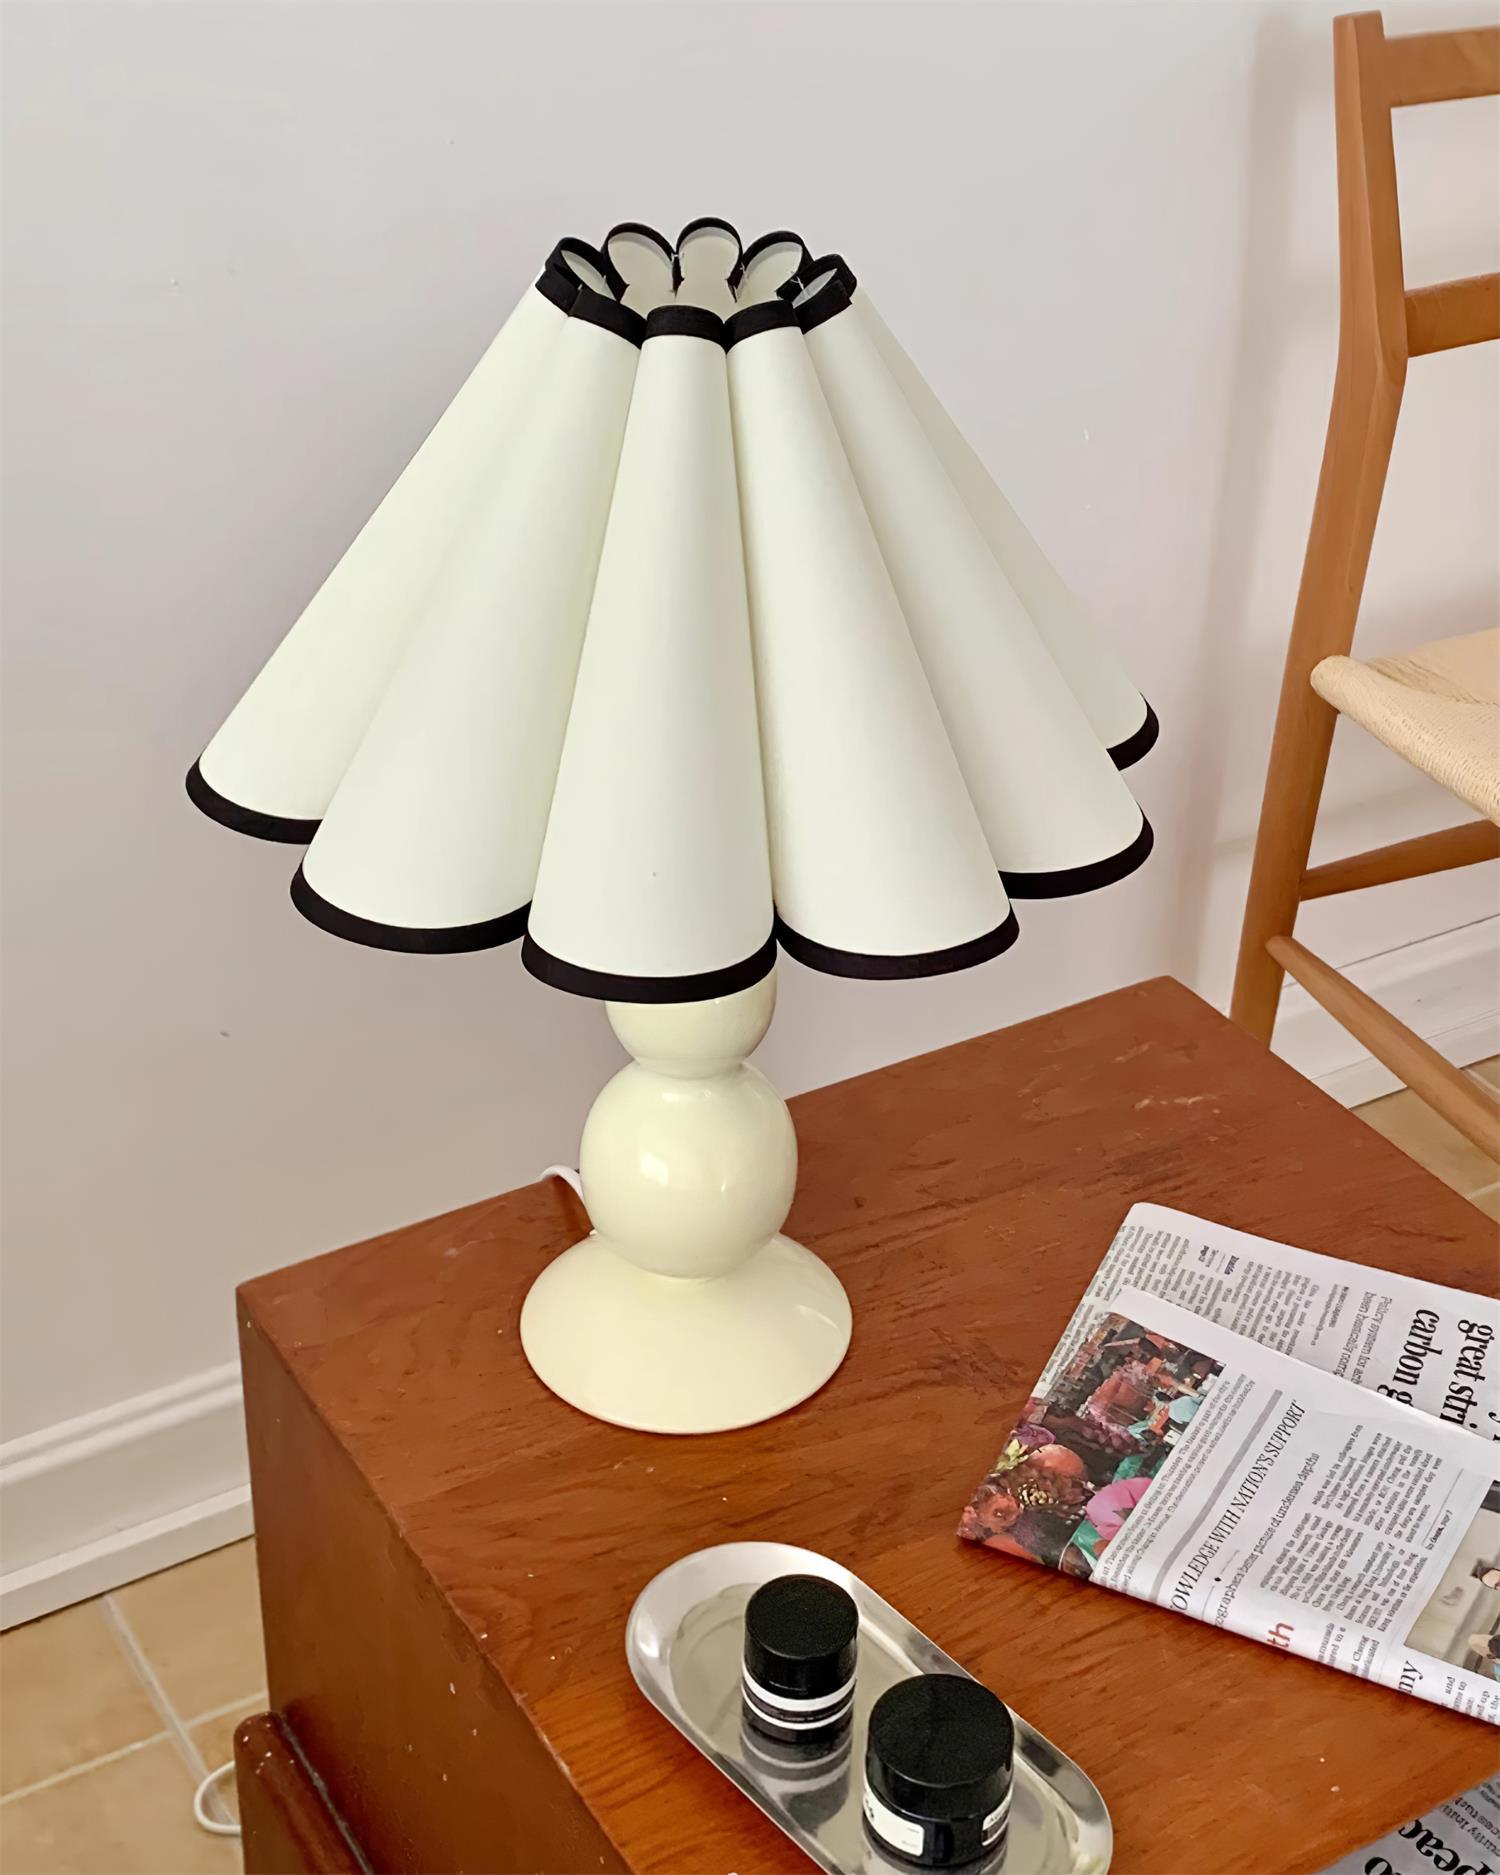 Lauren Table Lamp 10.8″- 15.3″ - Docos